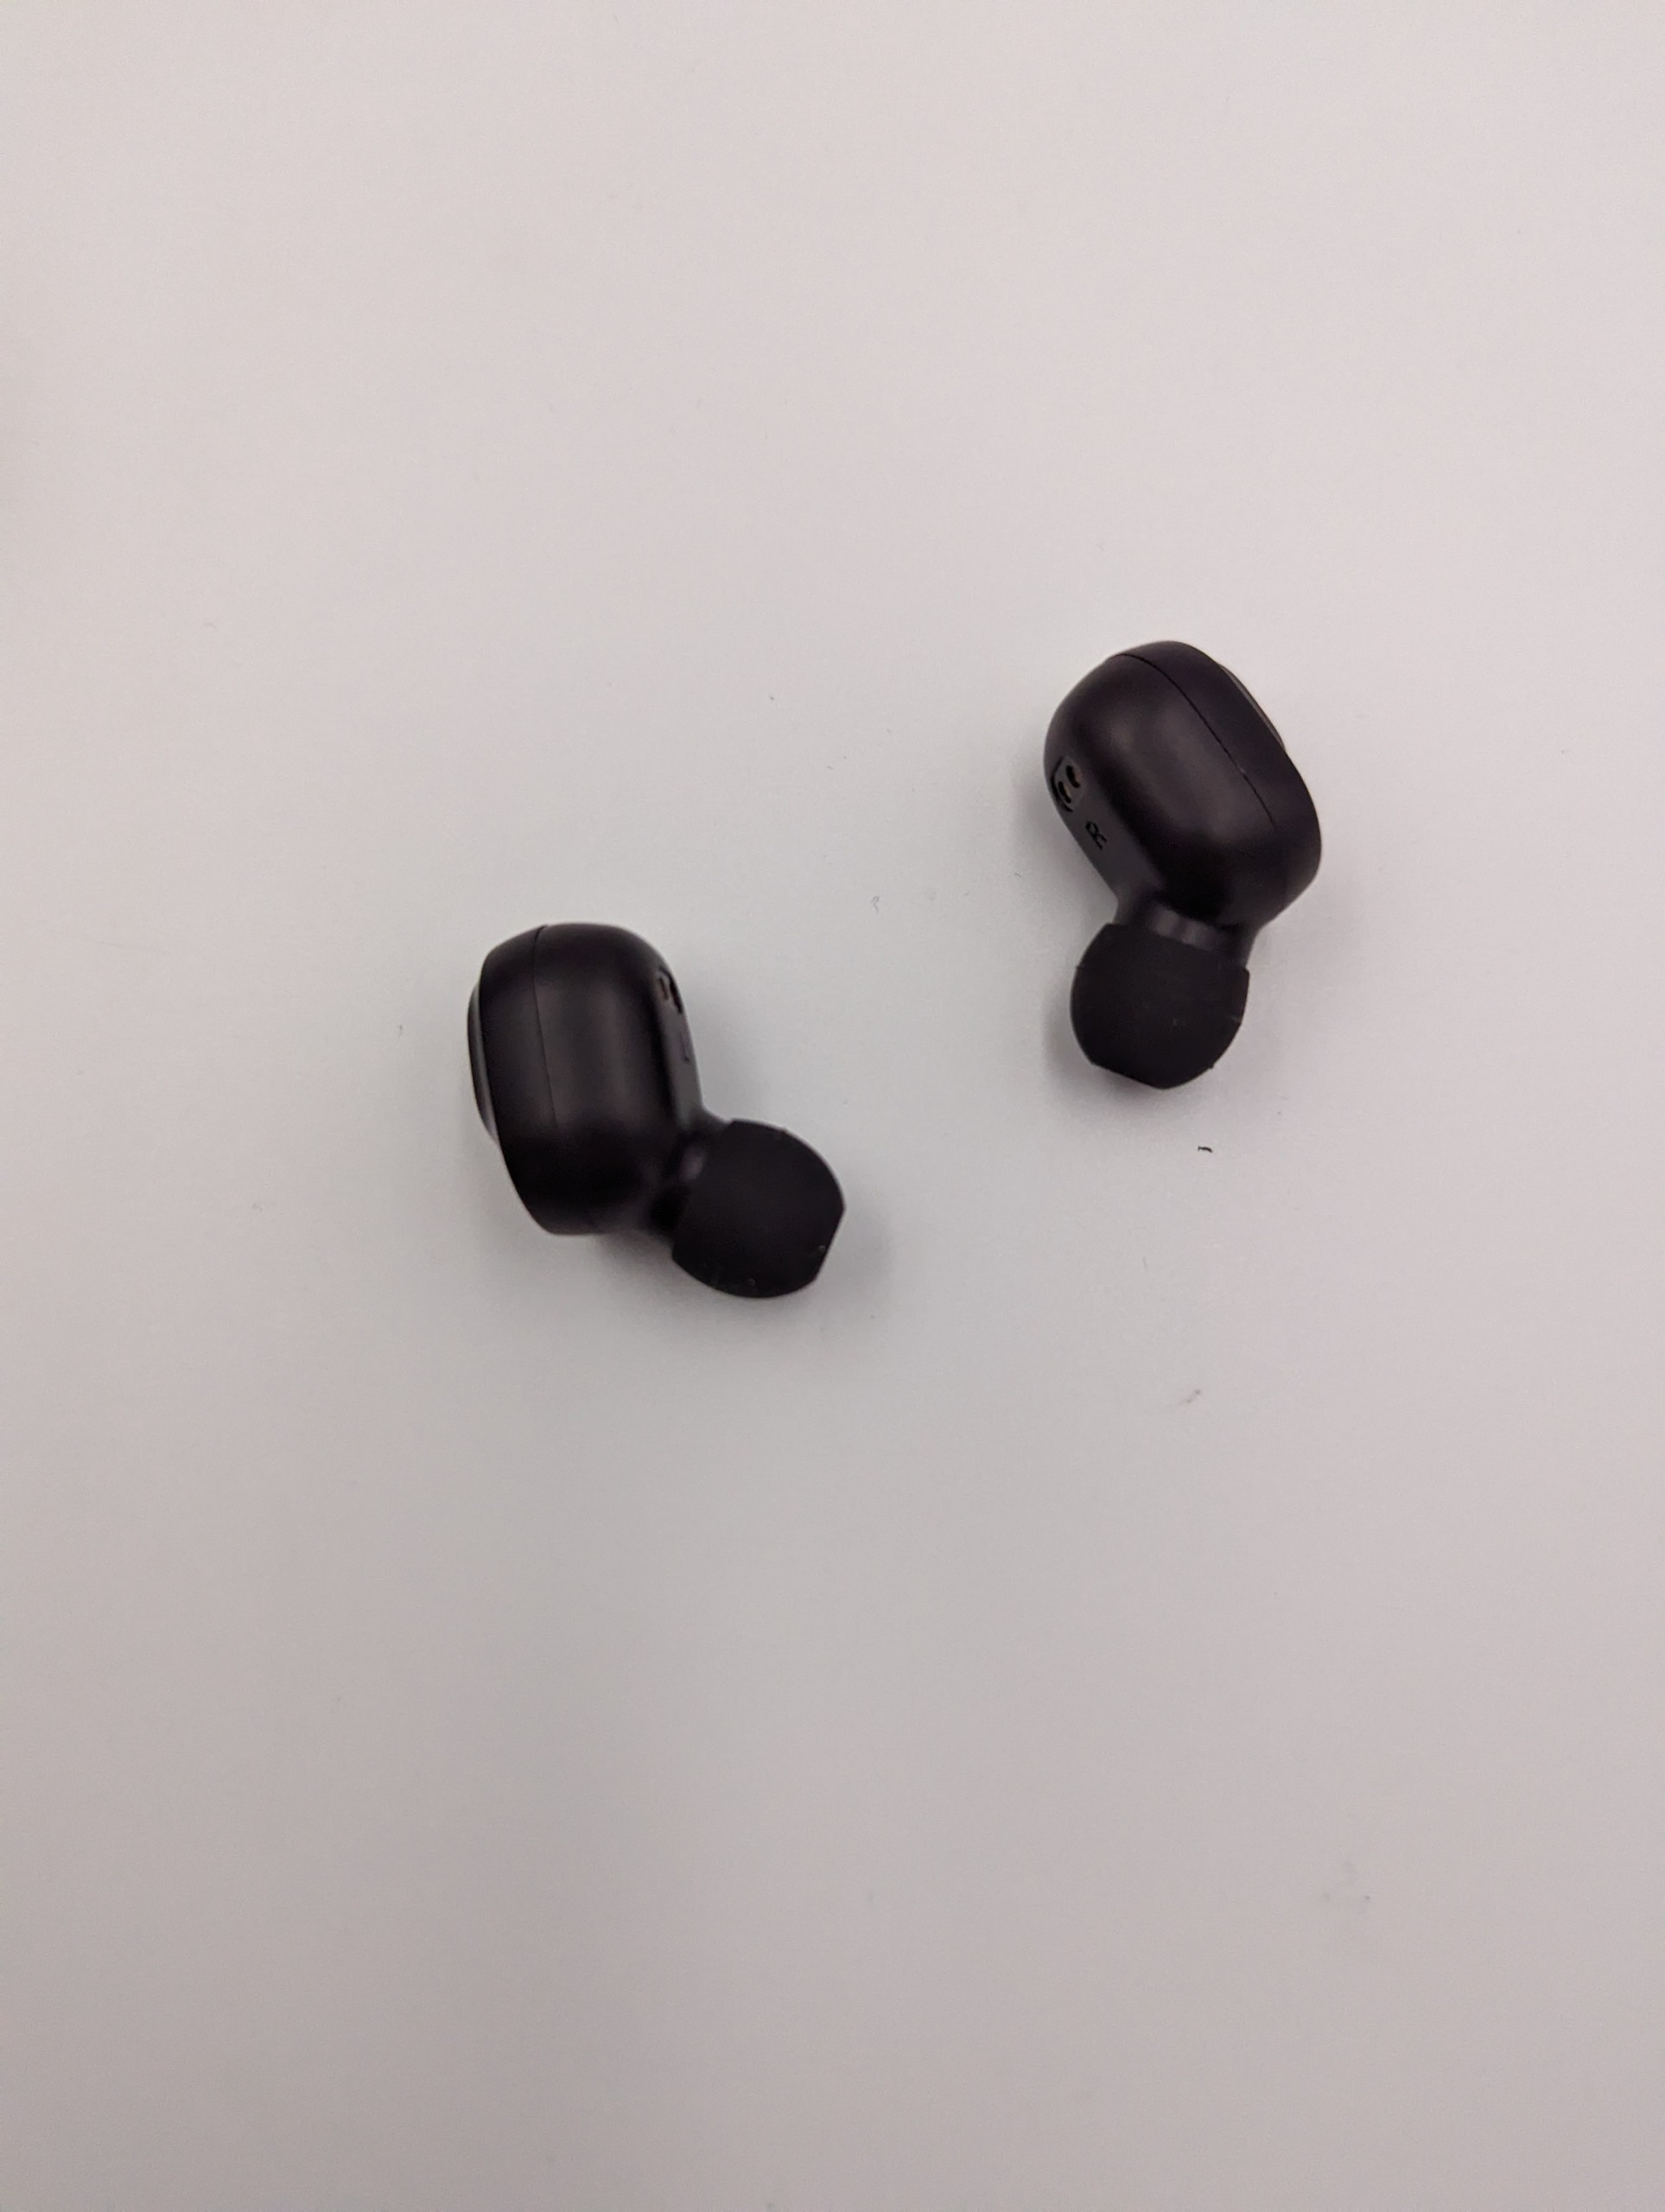 Image taken of the earphones